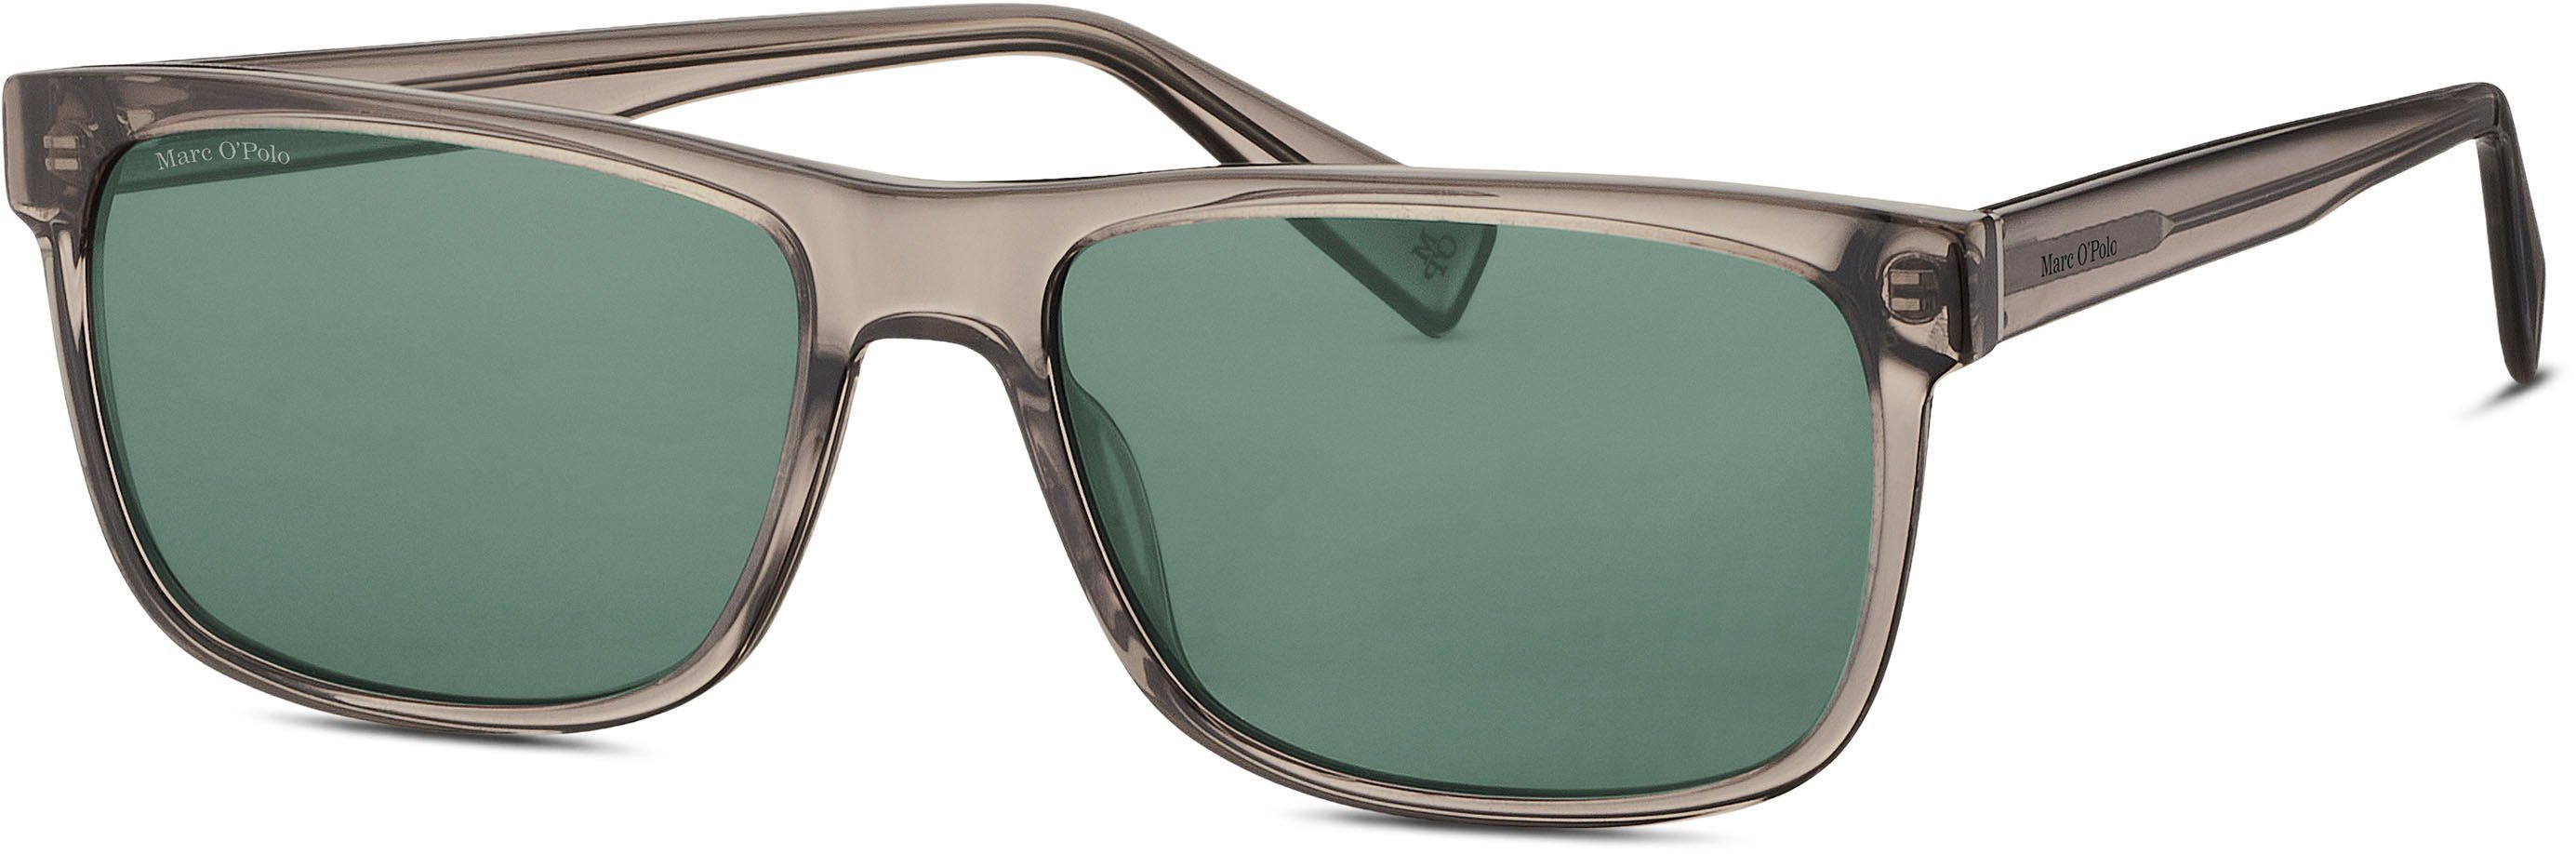 Marc O'Polo Modell Sonnenbrille 506192